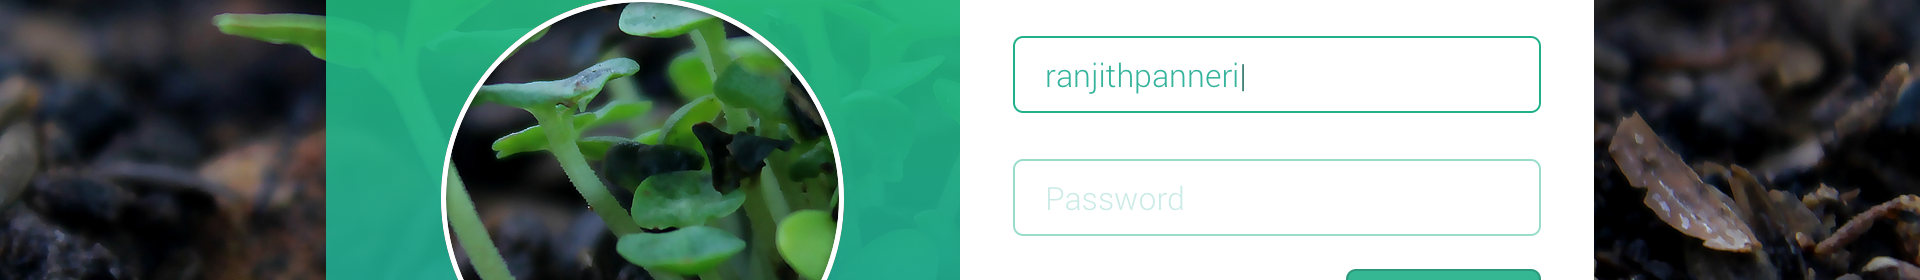 Ranjith Panneri のプロファイルバナー